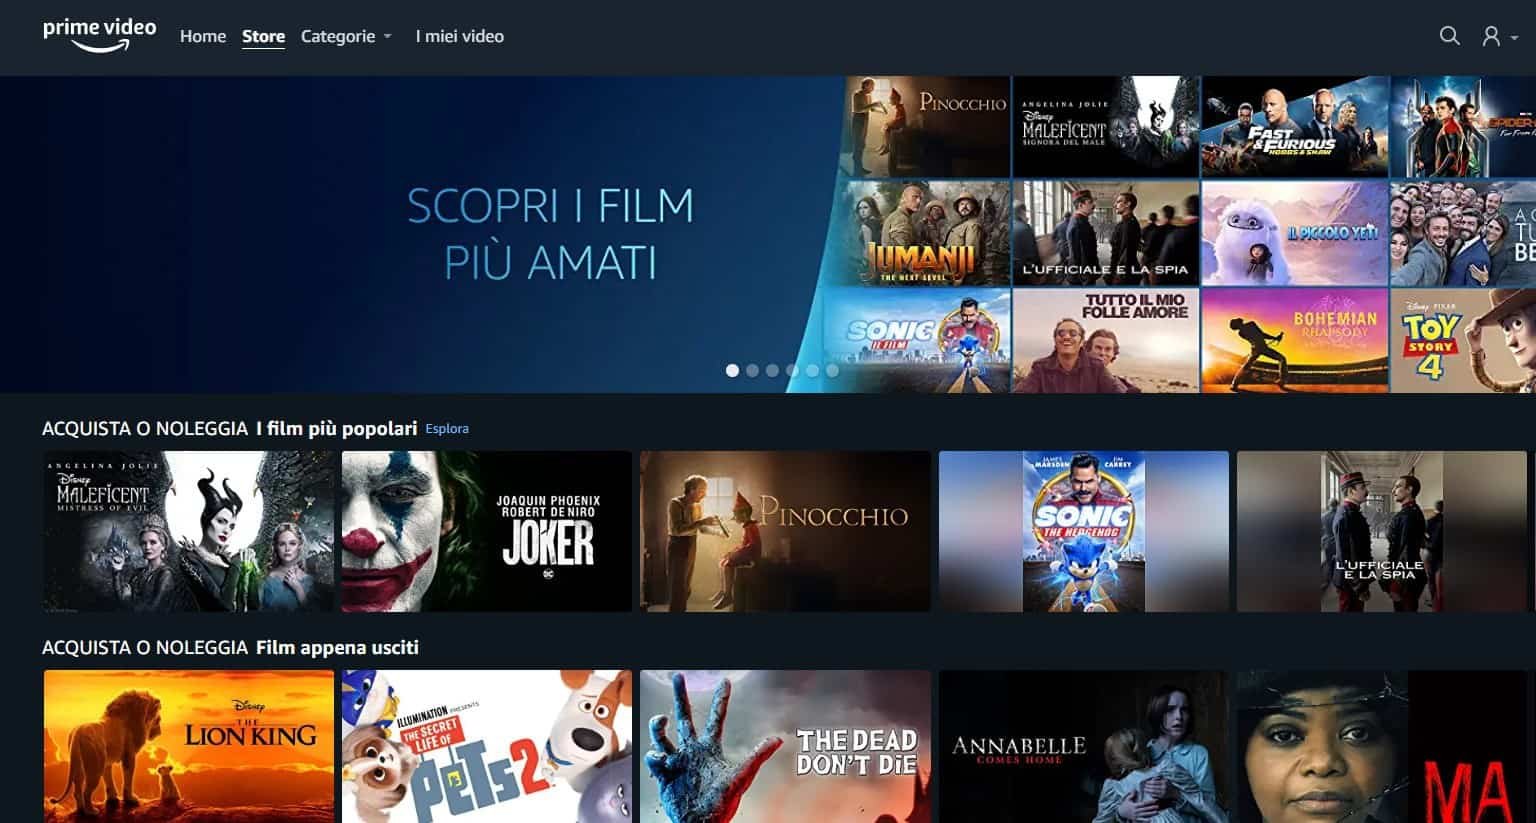 Prime Video Store disponibile in Italia con una valanga di film e serie TV